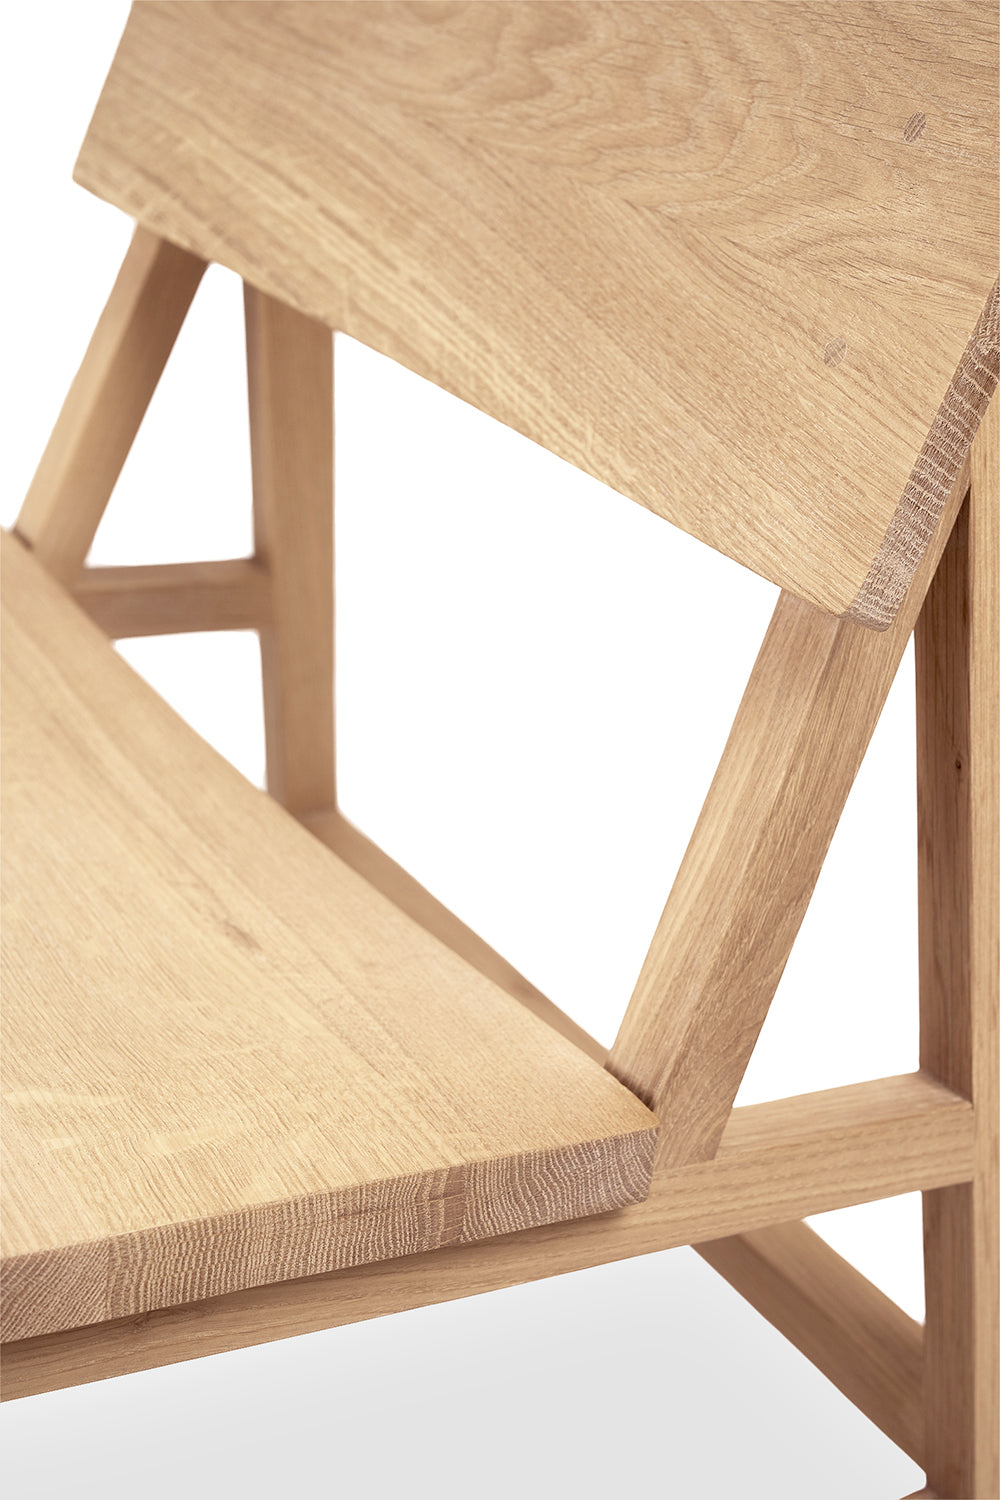 比利時原裝進口實木傢俬 - 座椅系列 - N2系列橡木梳化椅